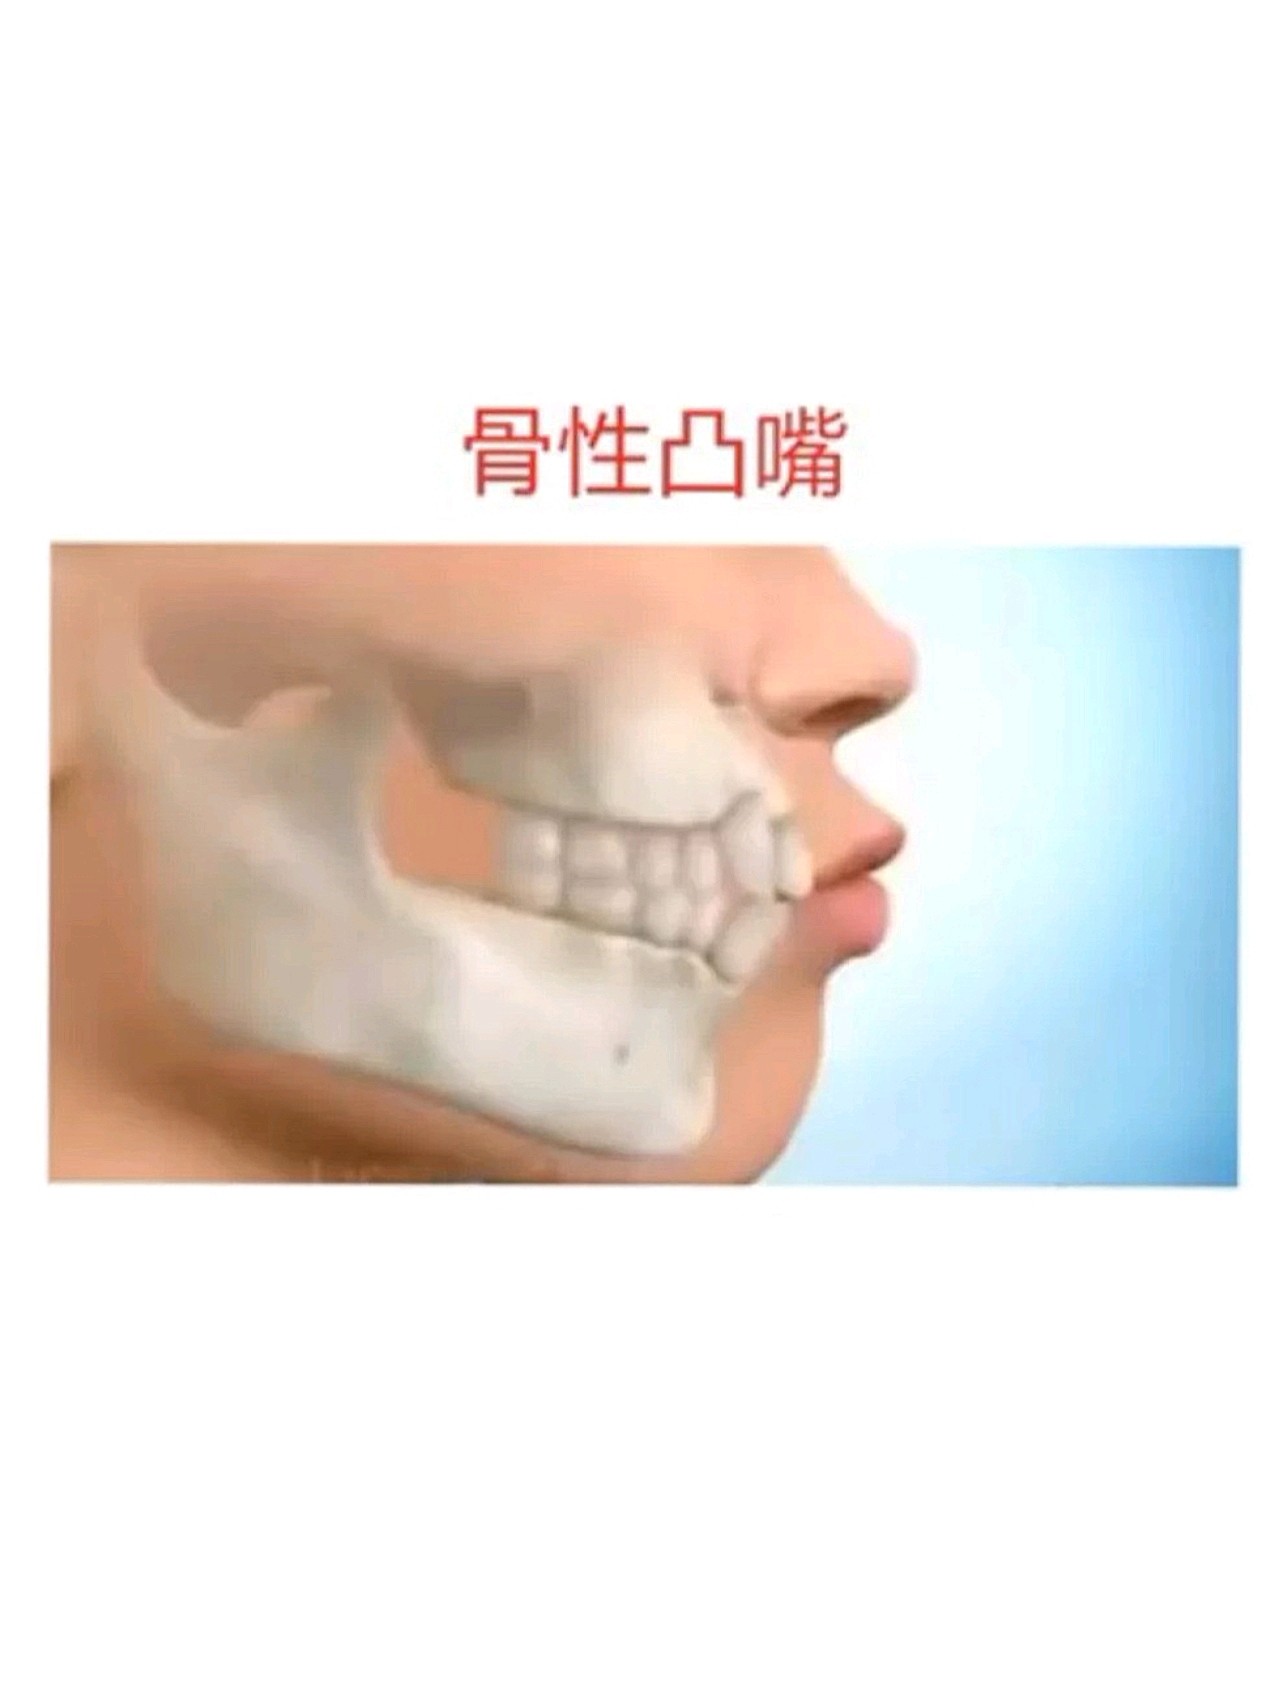 凸嘴分为两种:一种是牙性凸嘴,一种是骨性凸嘴.